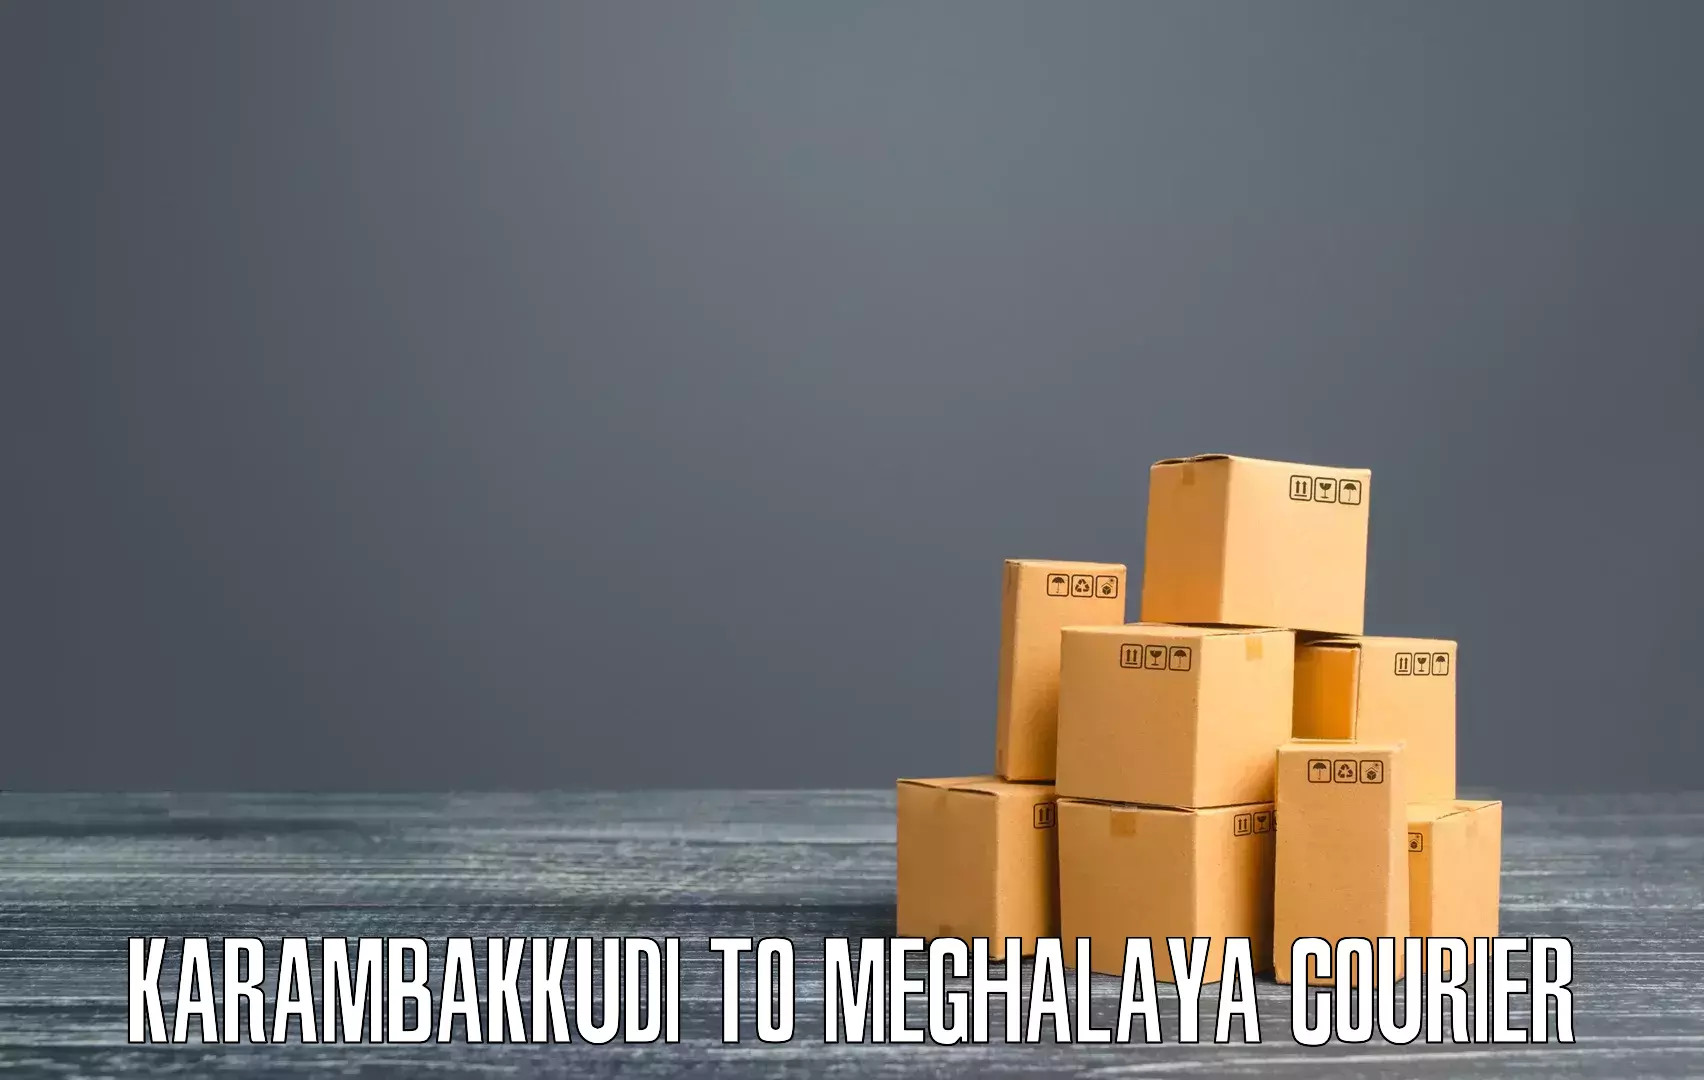 Courier app Karambakkudi to Meghalaya